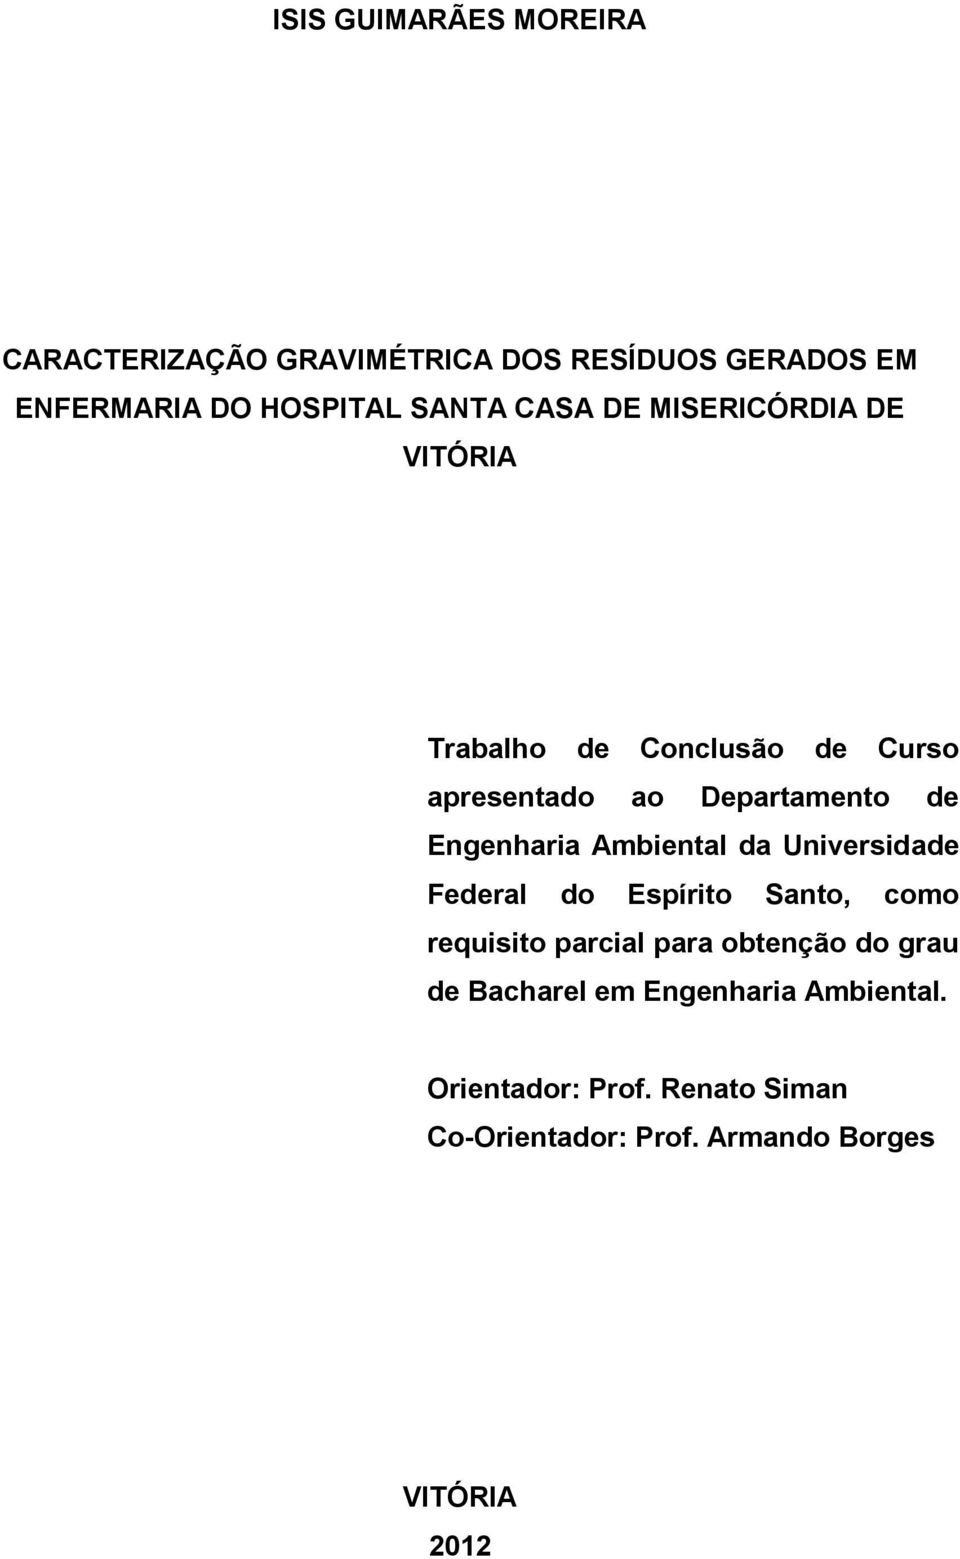 Ambiental da Universidade Federal do Espírito Santo, como requisito parcial para obtenção do grau de